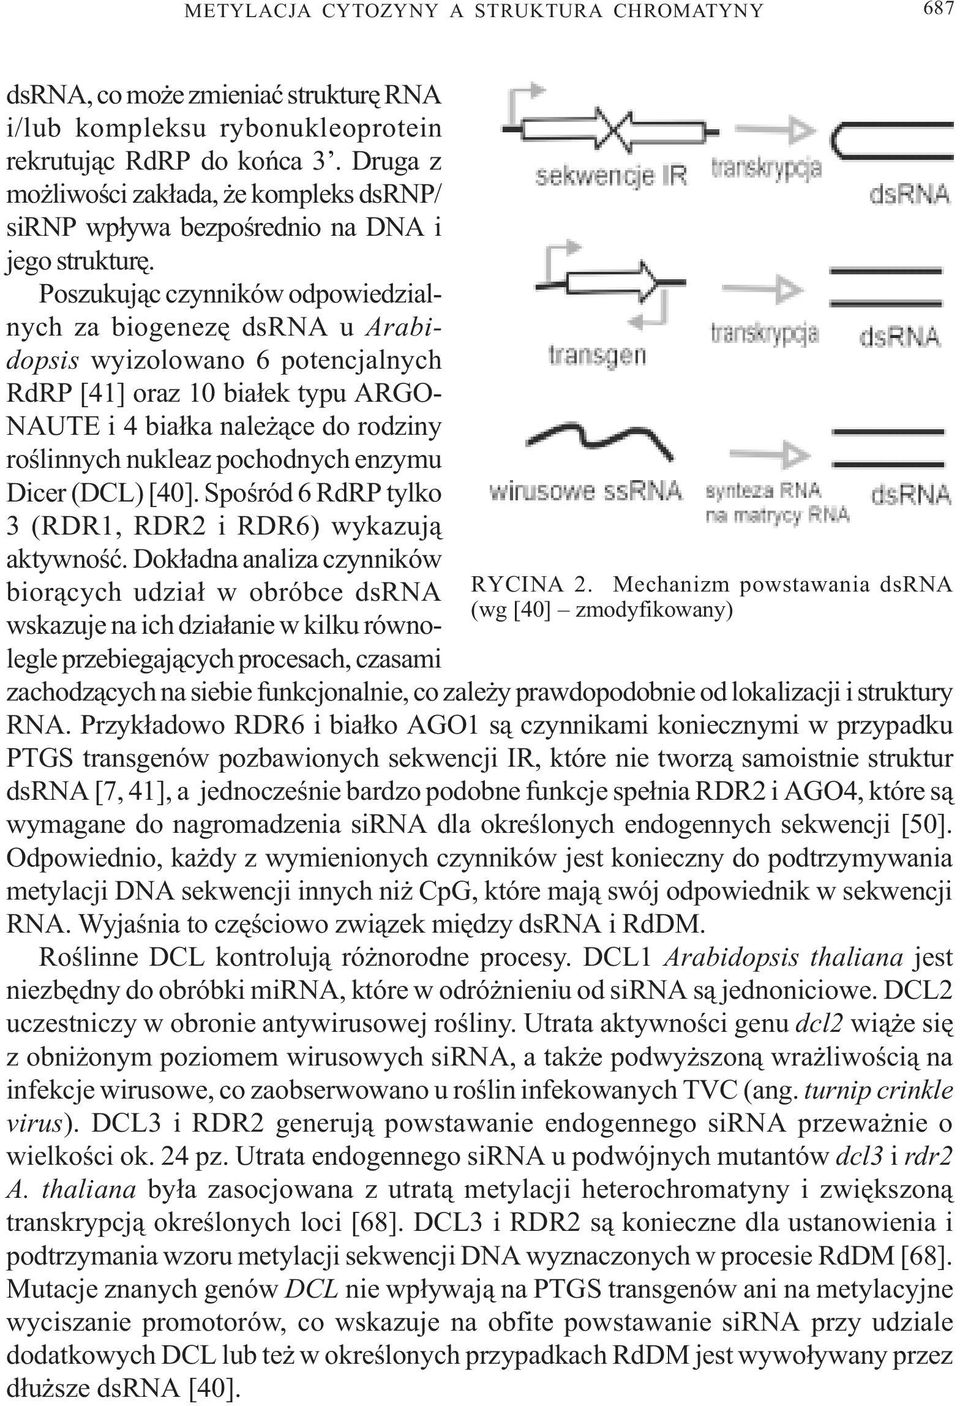 Poszukuj¹c czynników odpowiedzialnych za biogenezê dsrna u Arabidopsis wyizolowano 6 potencjalnych RdRP [41] oraz 10 bia³ek typu ARGO- NAUTE i 4 bia³ka nale ¹ce do rodziny roœlinnych nukleaz